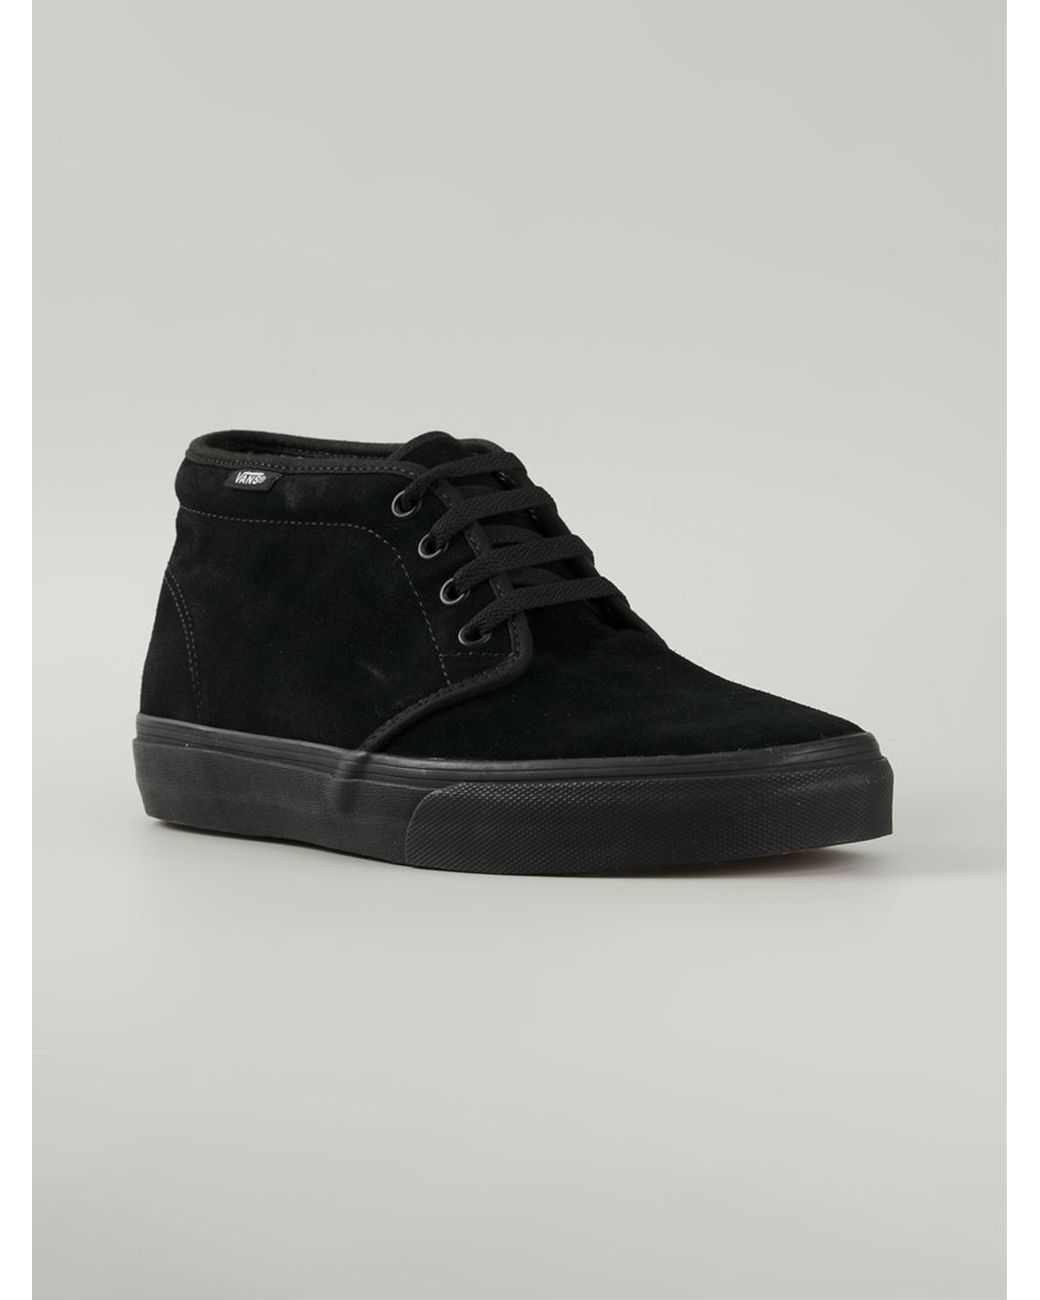 Vans Chukka Mid-top Sneakers in Black for Men | Lyst